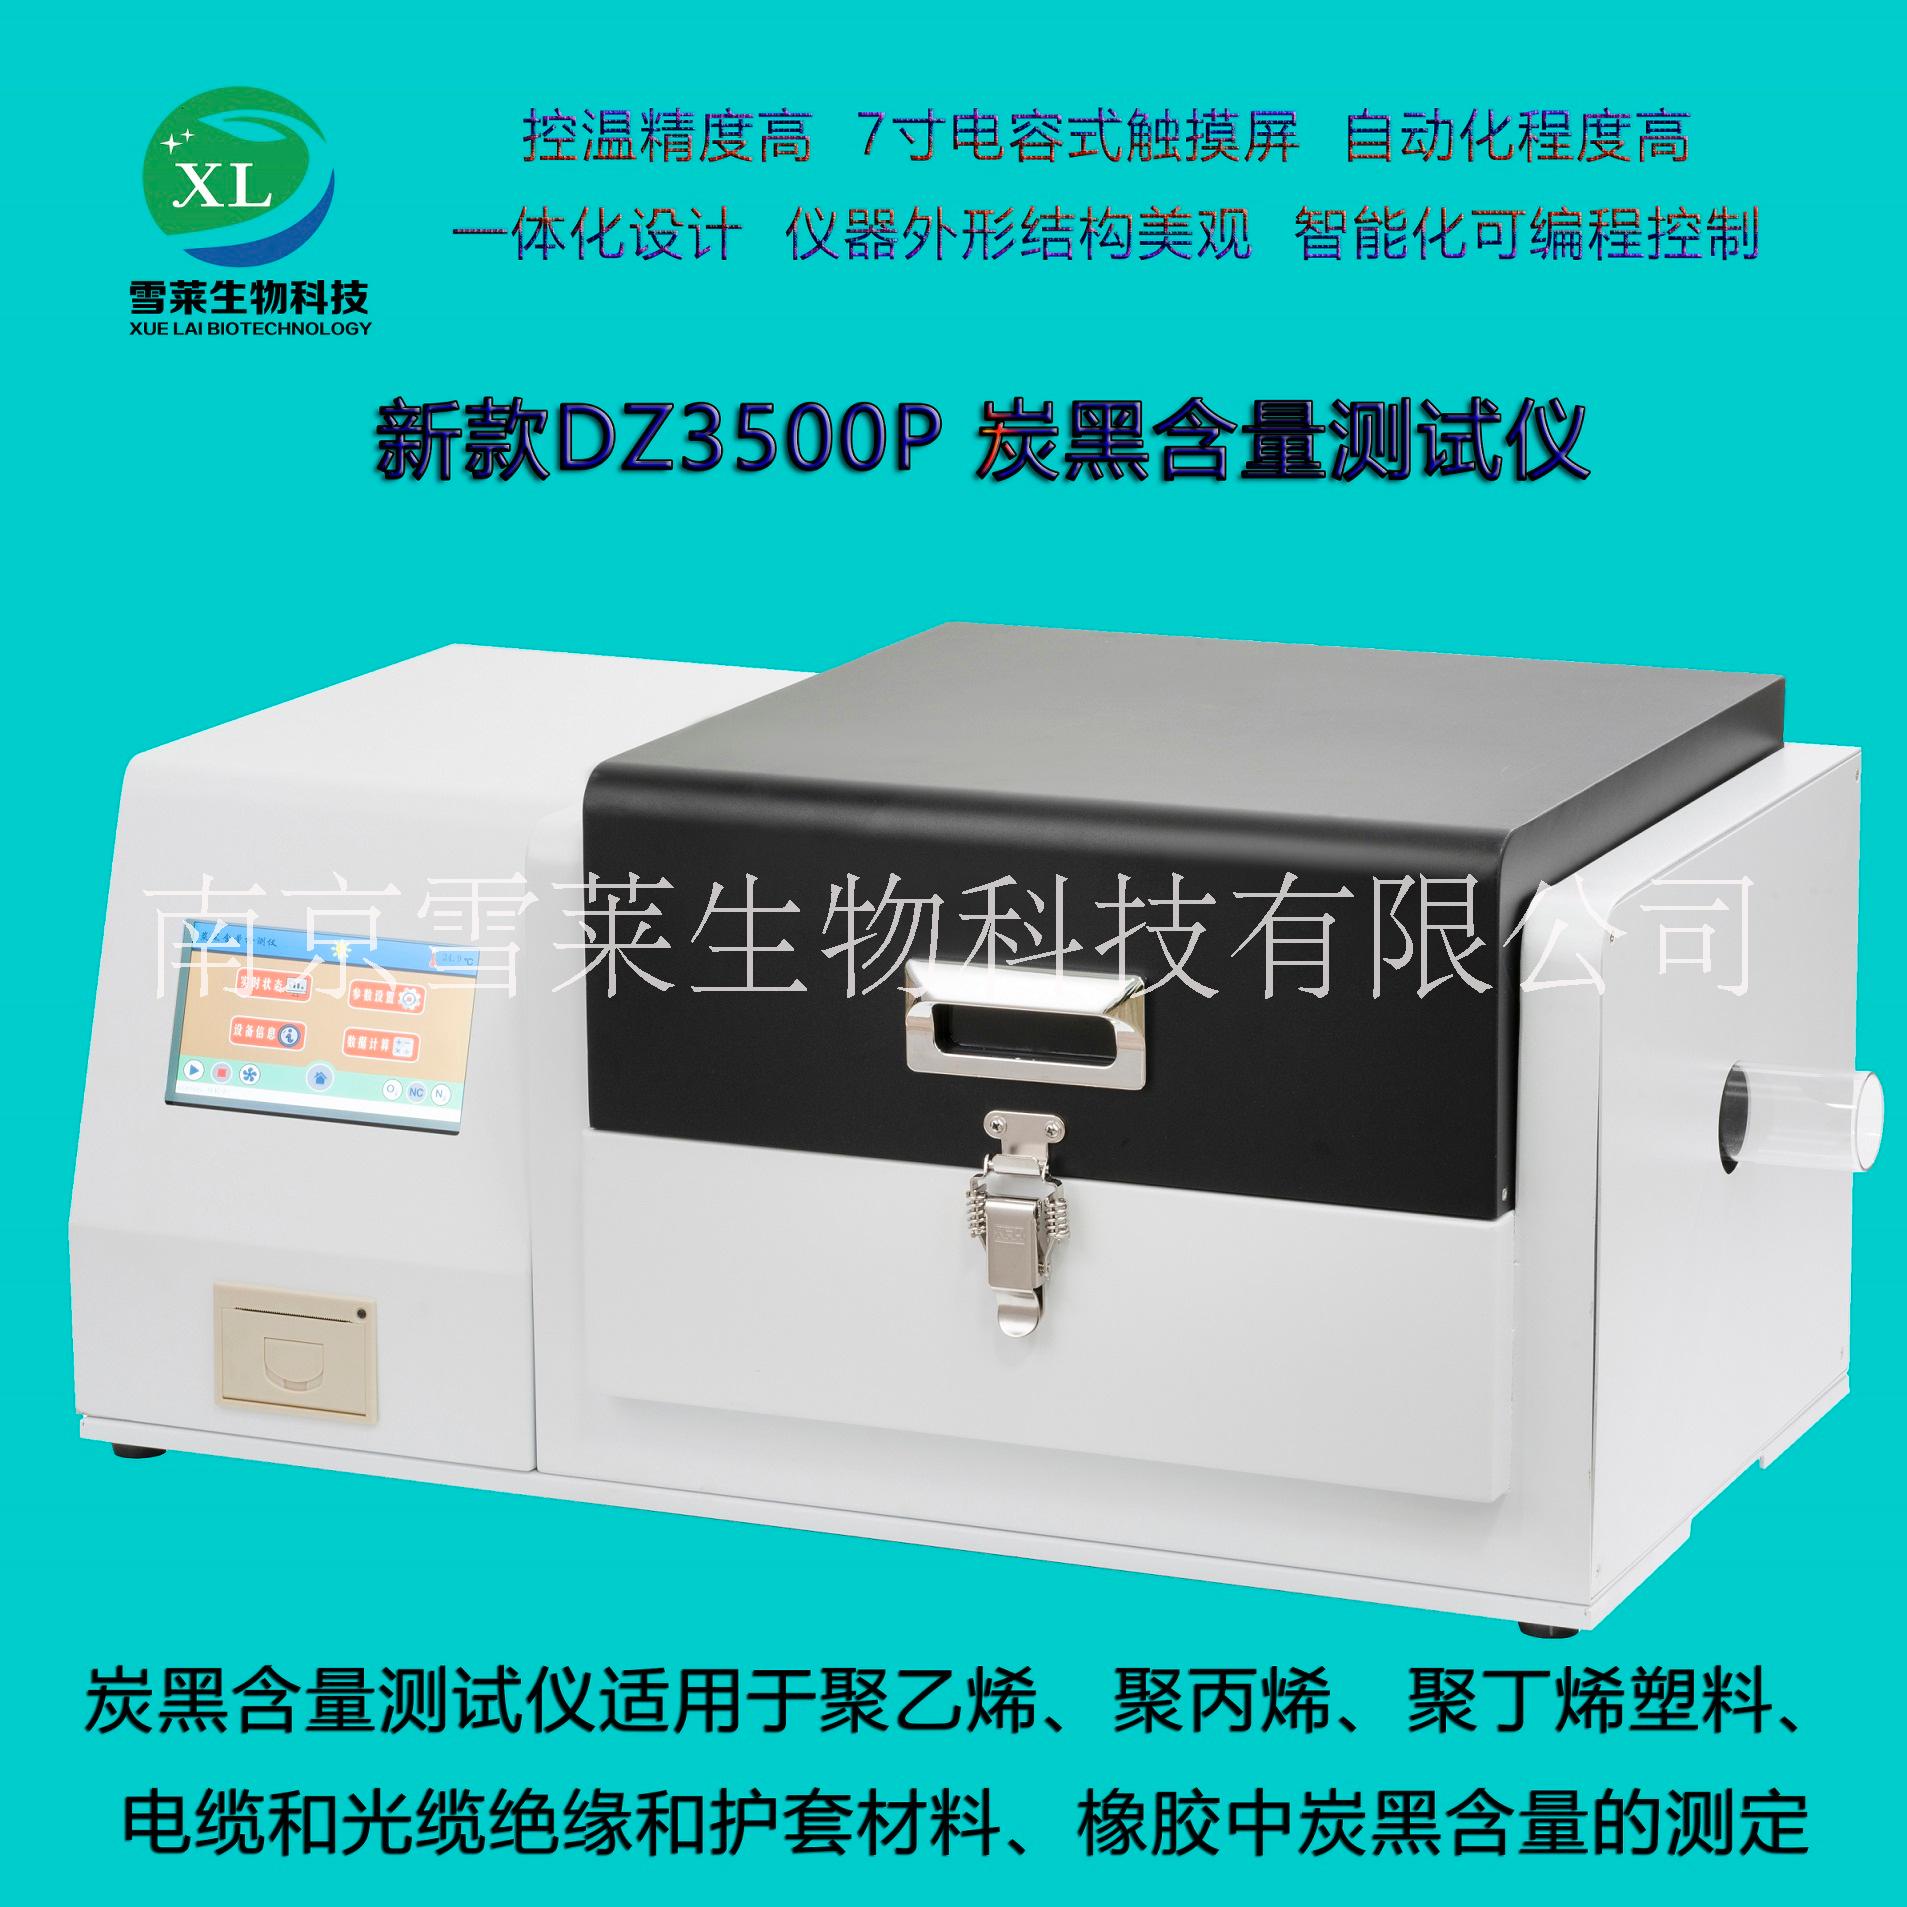 炭黑含量测试仪DZ3500P 碳黑含量检测仪南京雪莱生物科技有限公司图片